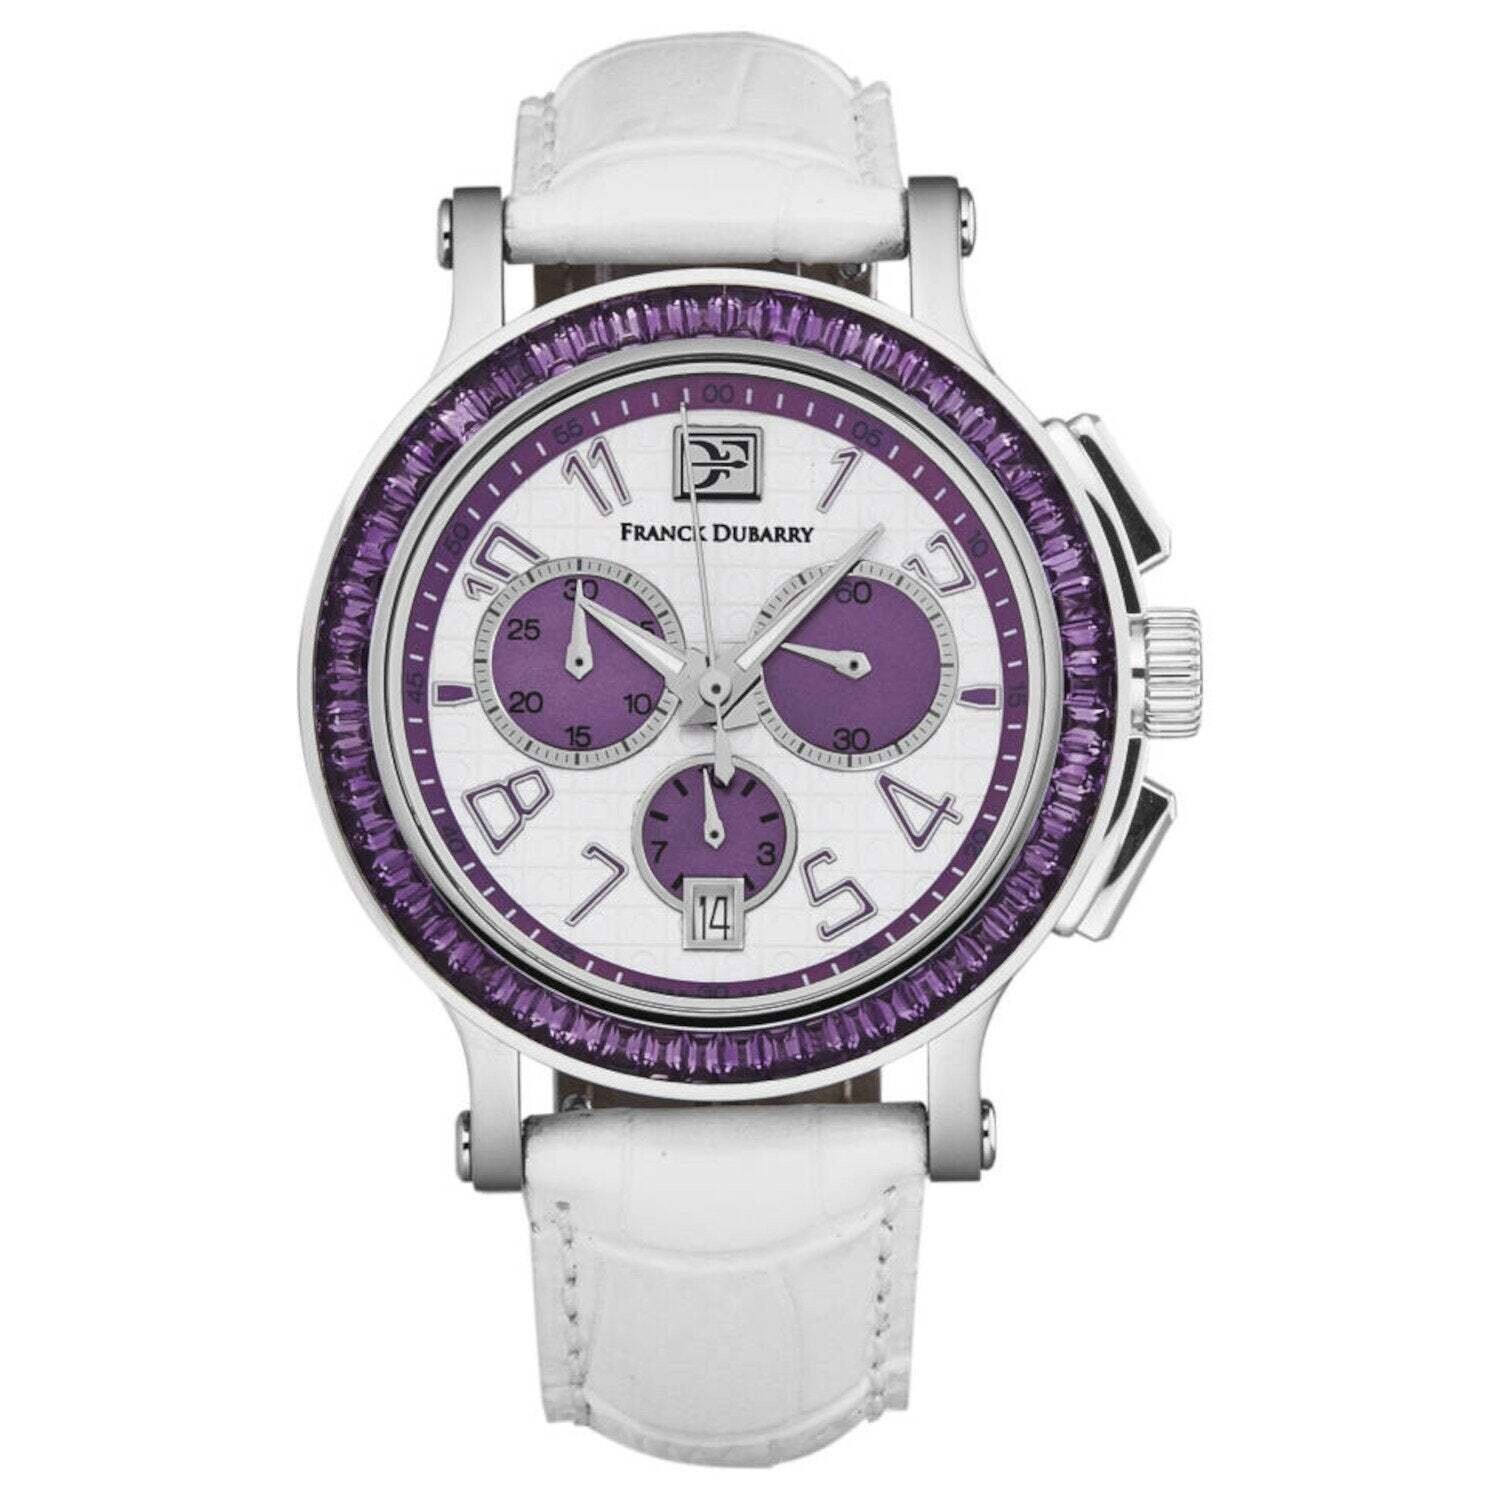 Franck Dubarry CC-02-03 Women's 'Crazy Colors' Chronograph White/Purple Dial White Leather Strap Swiss Quartz Watch